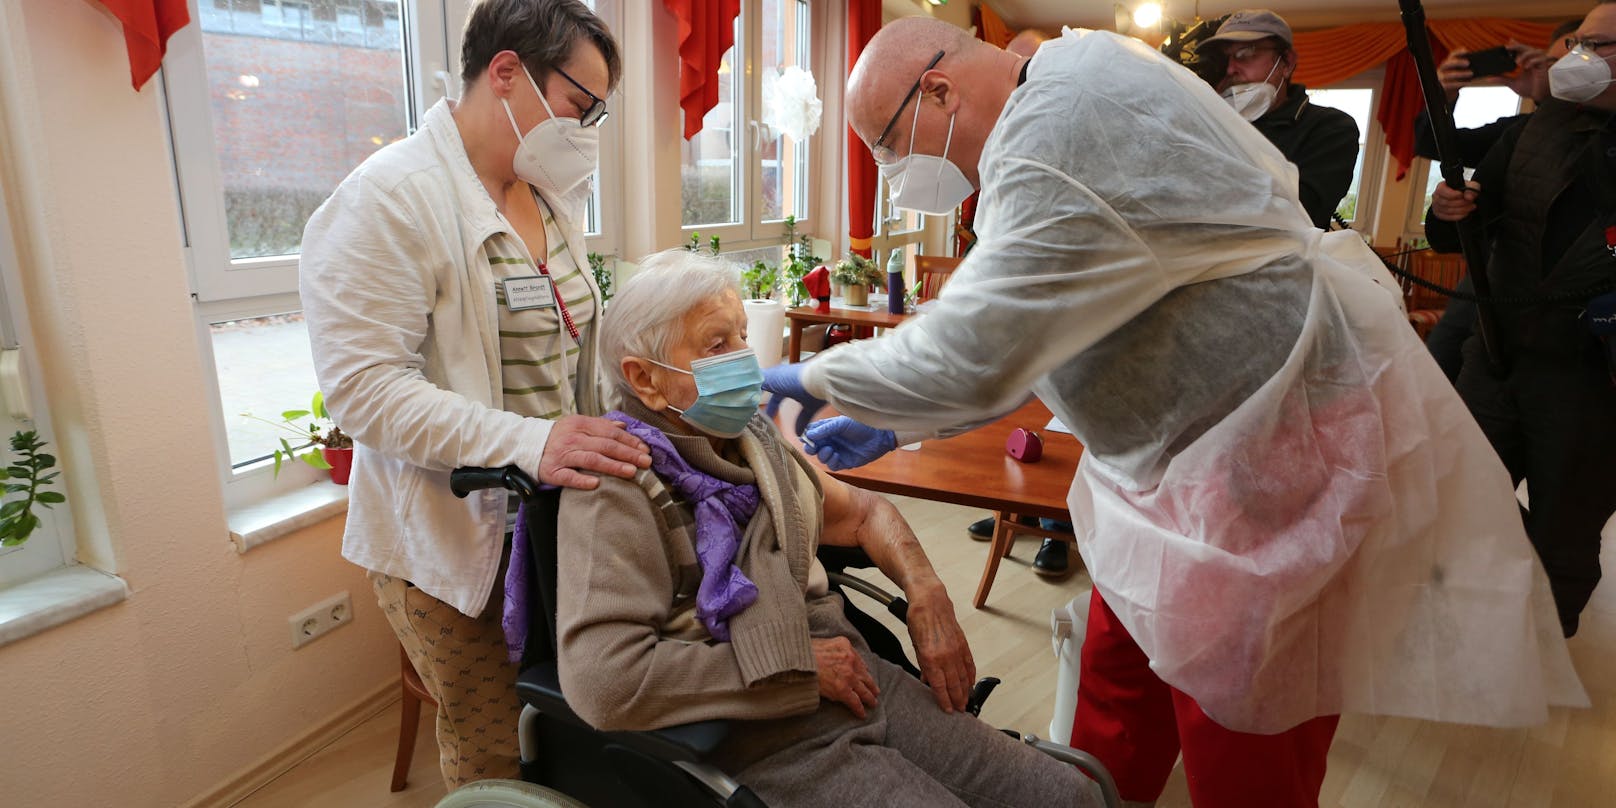 Bewohner von Alten- und Pflegeheimen und Angehörige der Gesundheitsberufe werden bereits fleißig geimpft. Für den Rest heißt es noch "bitte warten".